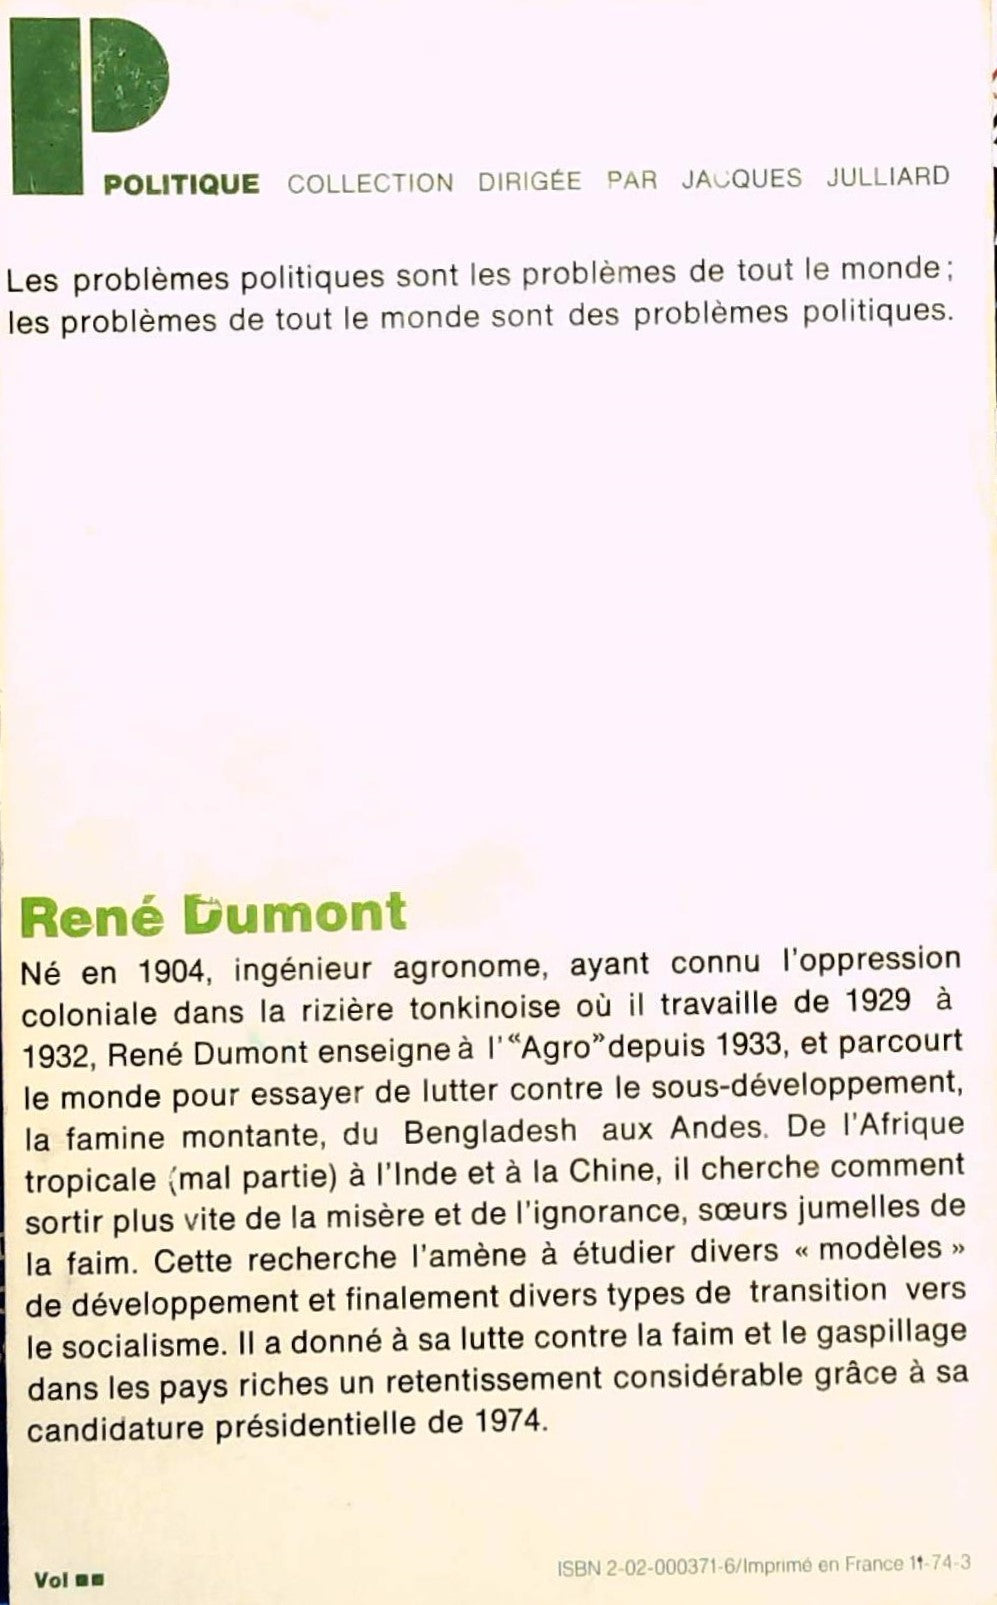 L'utopie ou la mort (René Dumont)